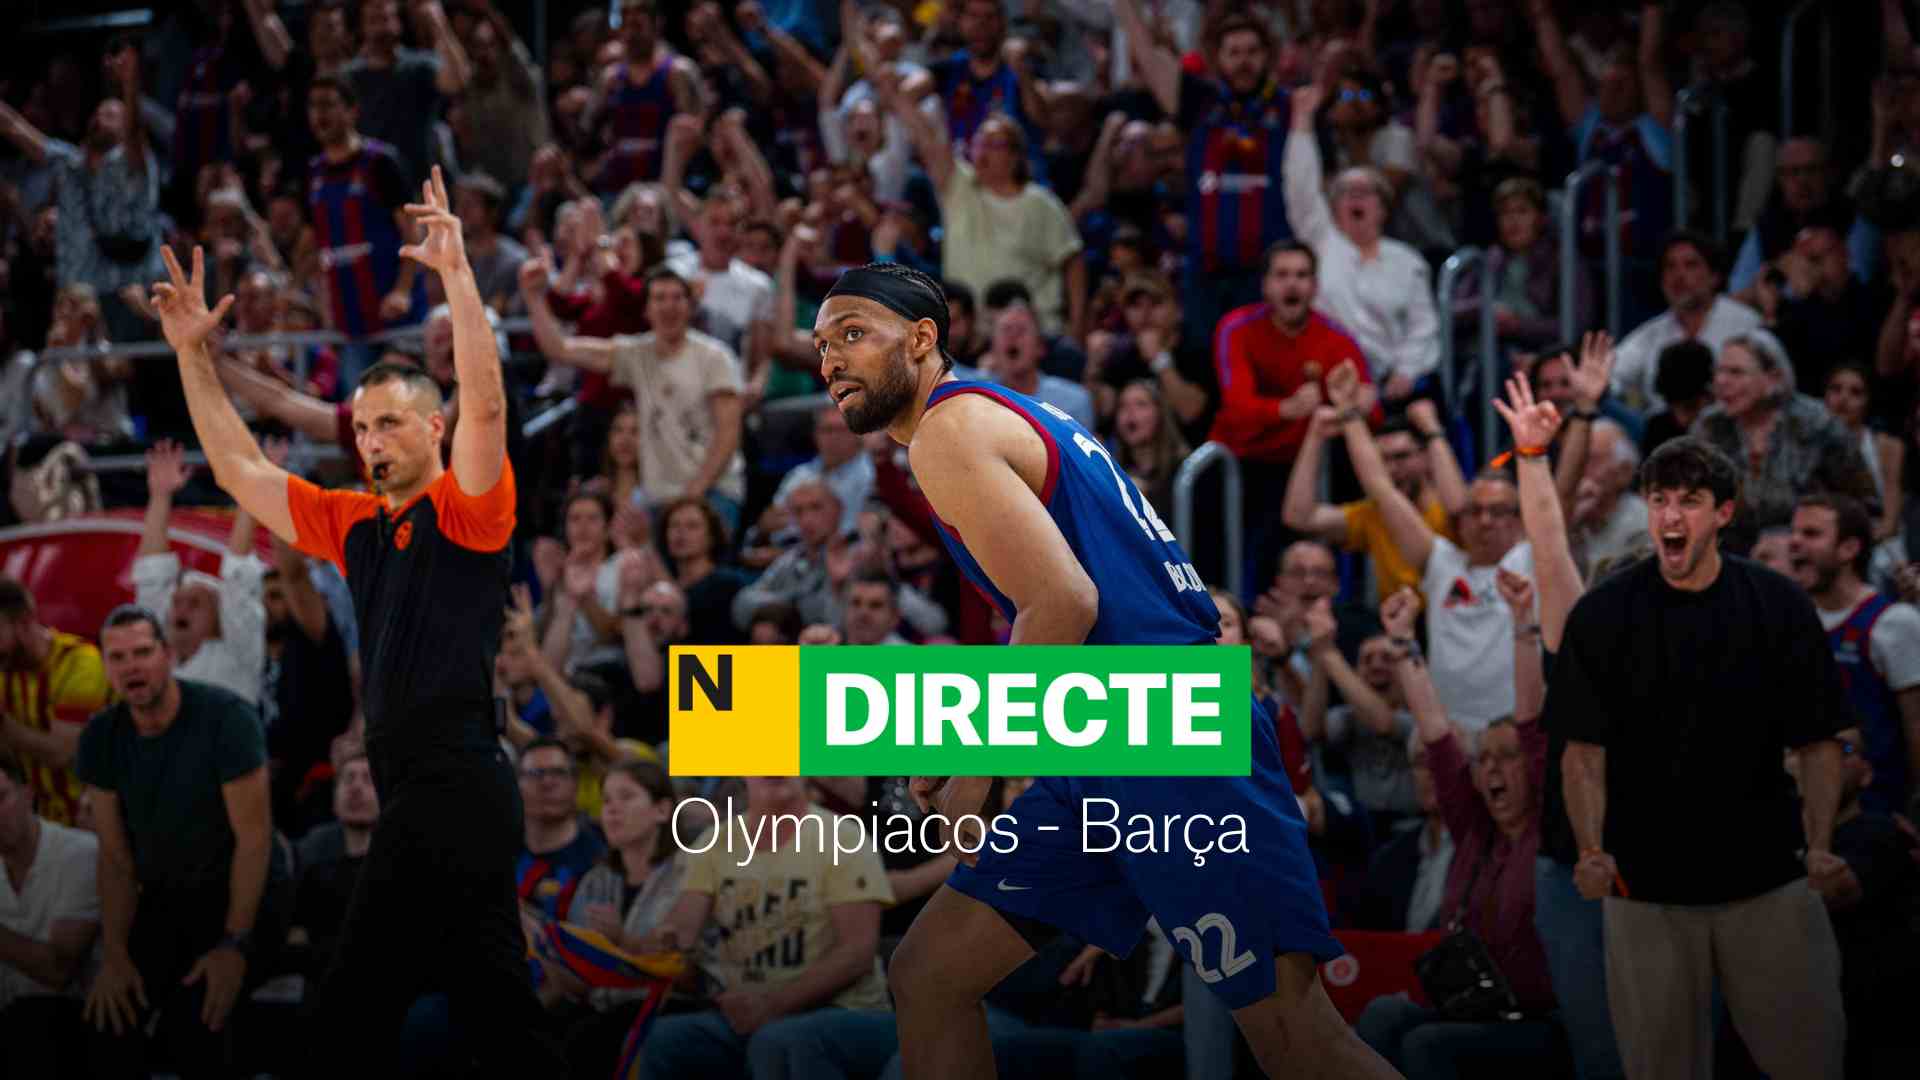 Olympiacos - Barcelona de la Euroliga de baloncesto, DIRECTO | Resultado y resumen